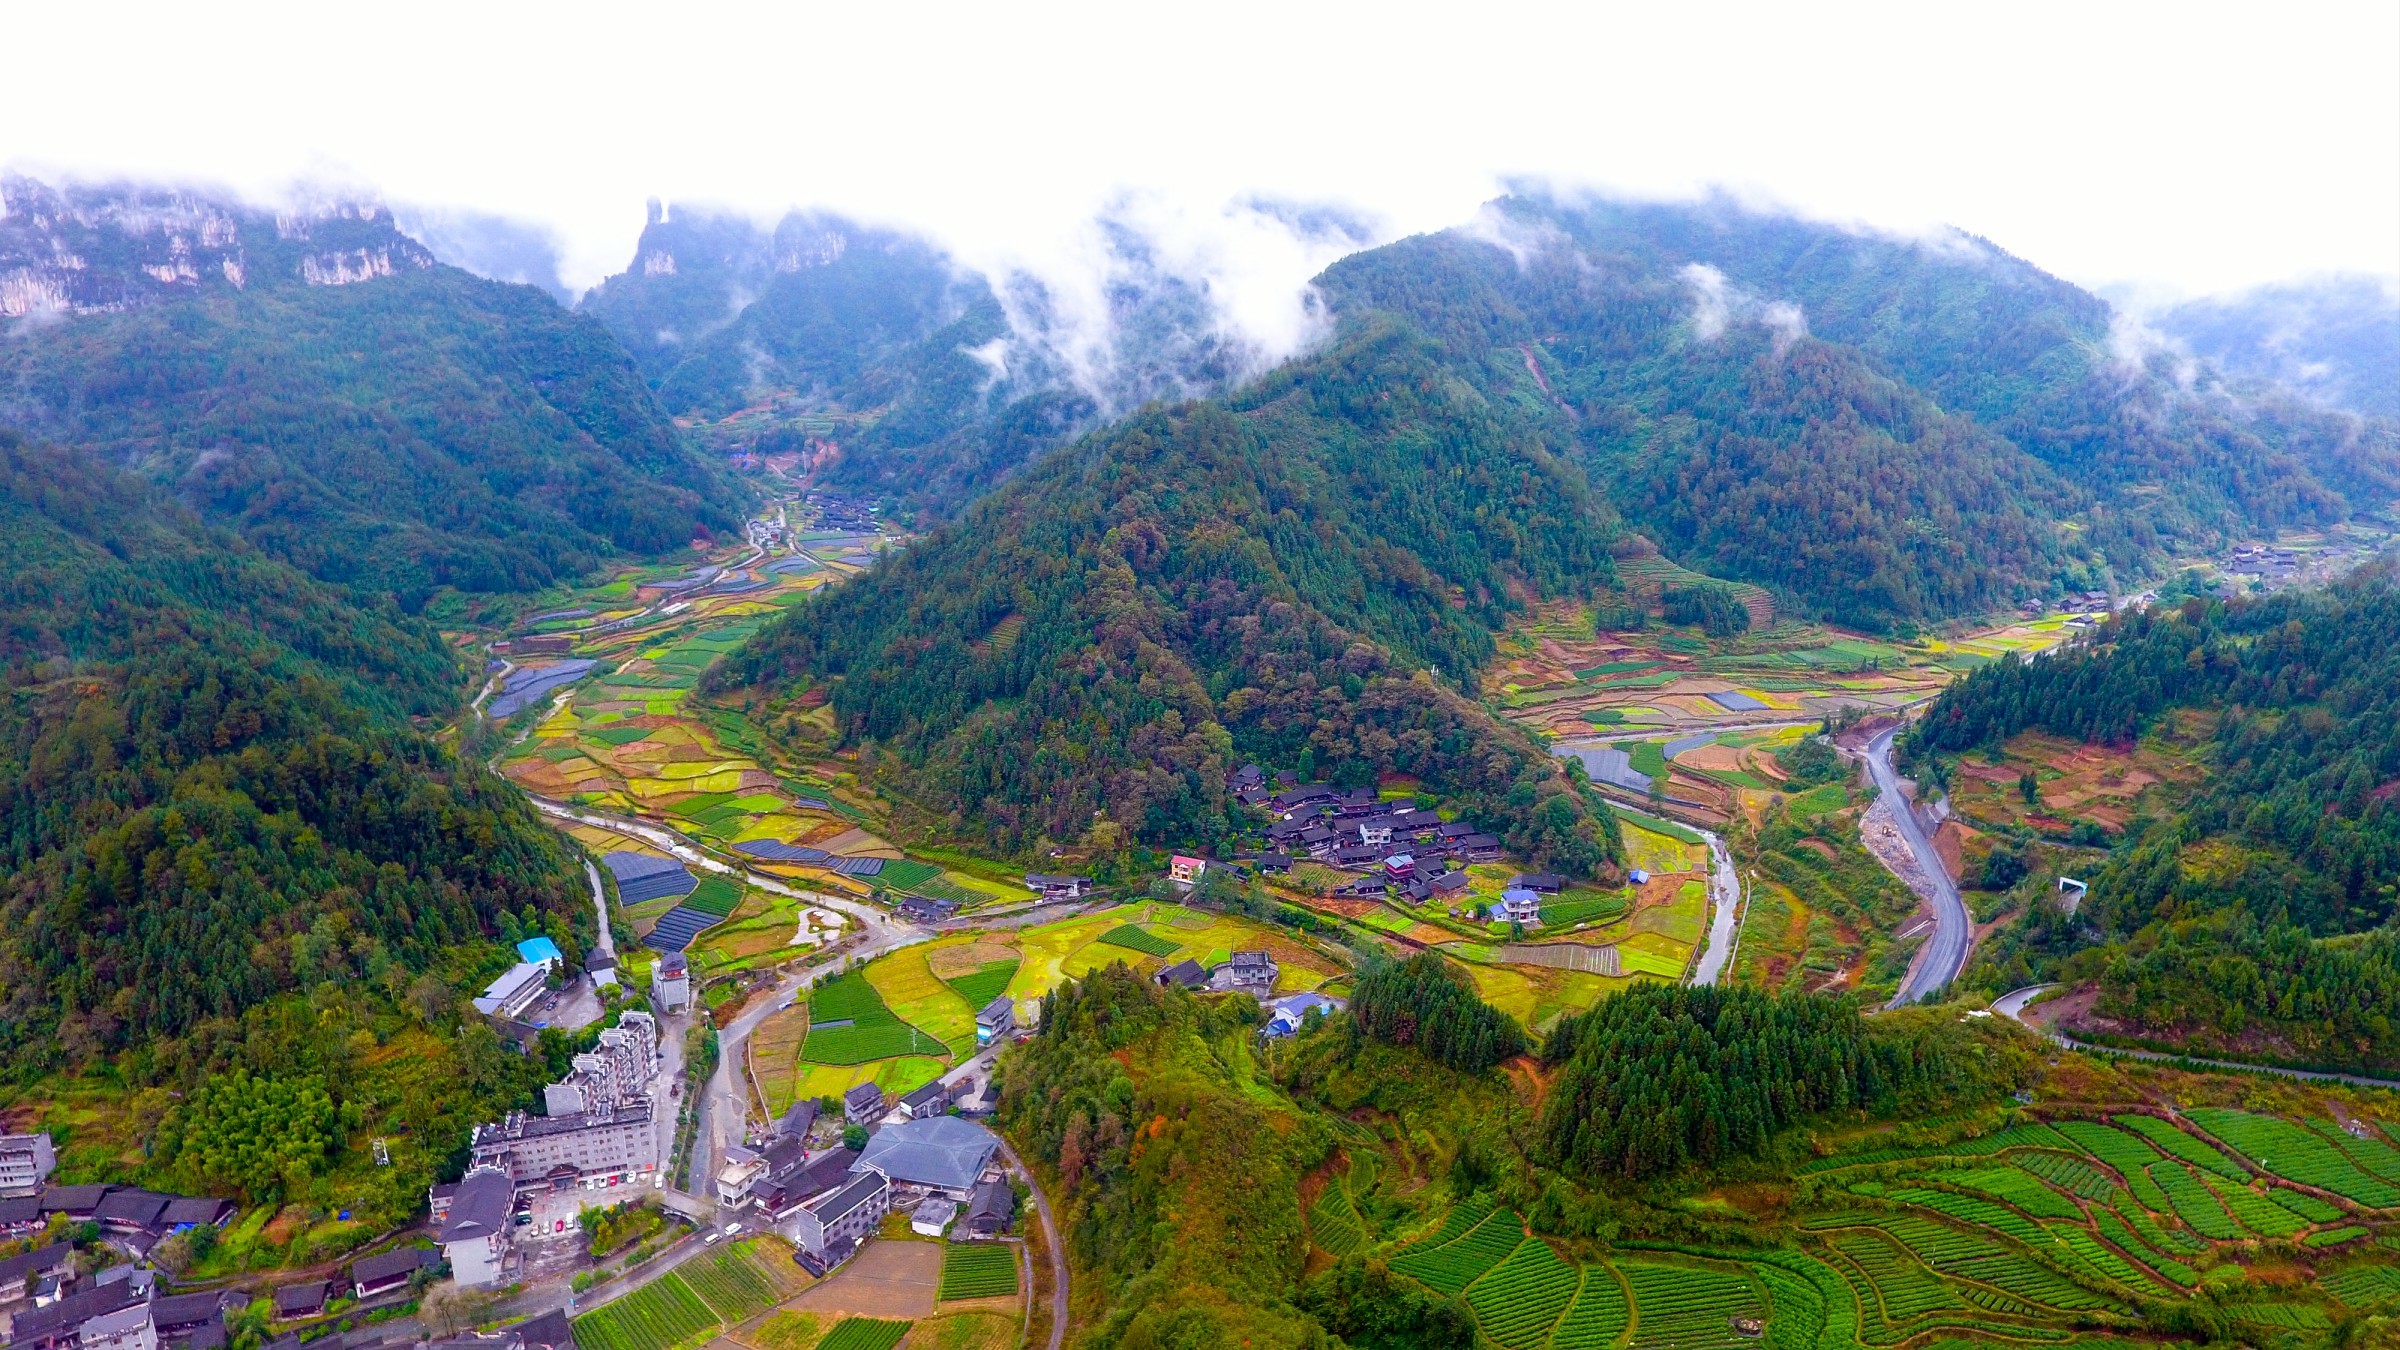 湘西吕洞山风景区图片